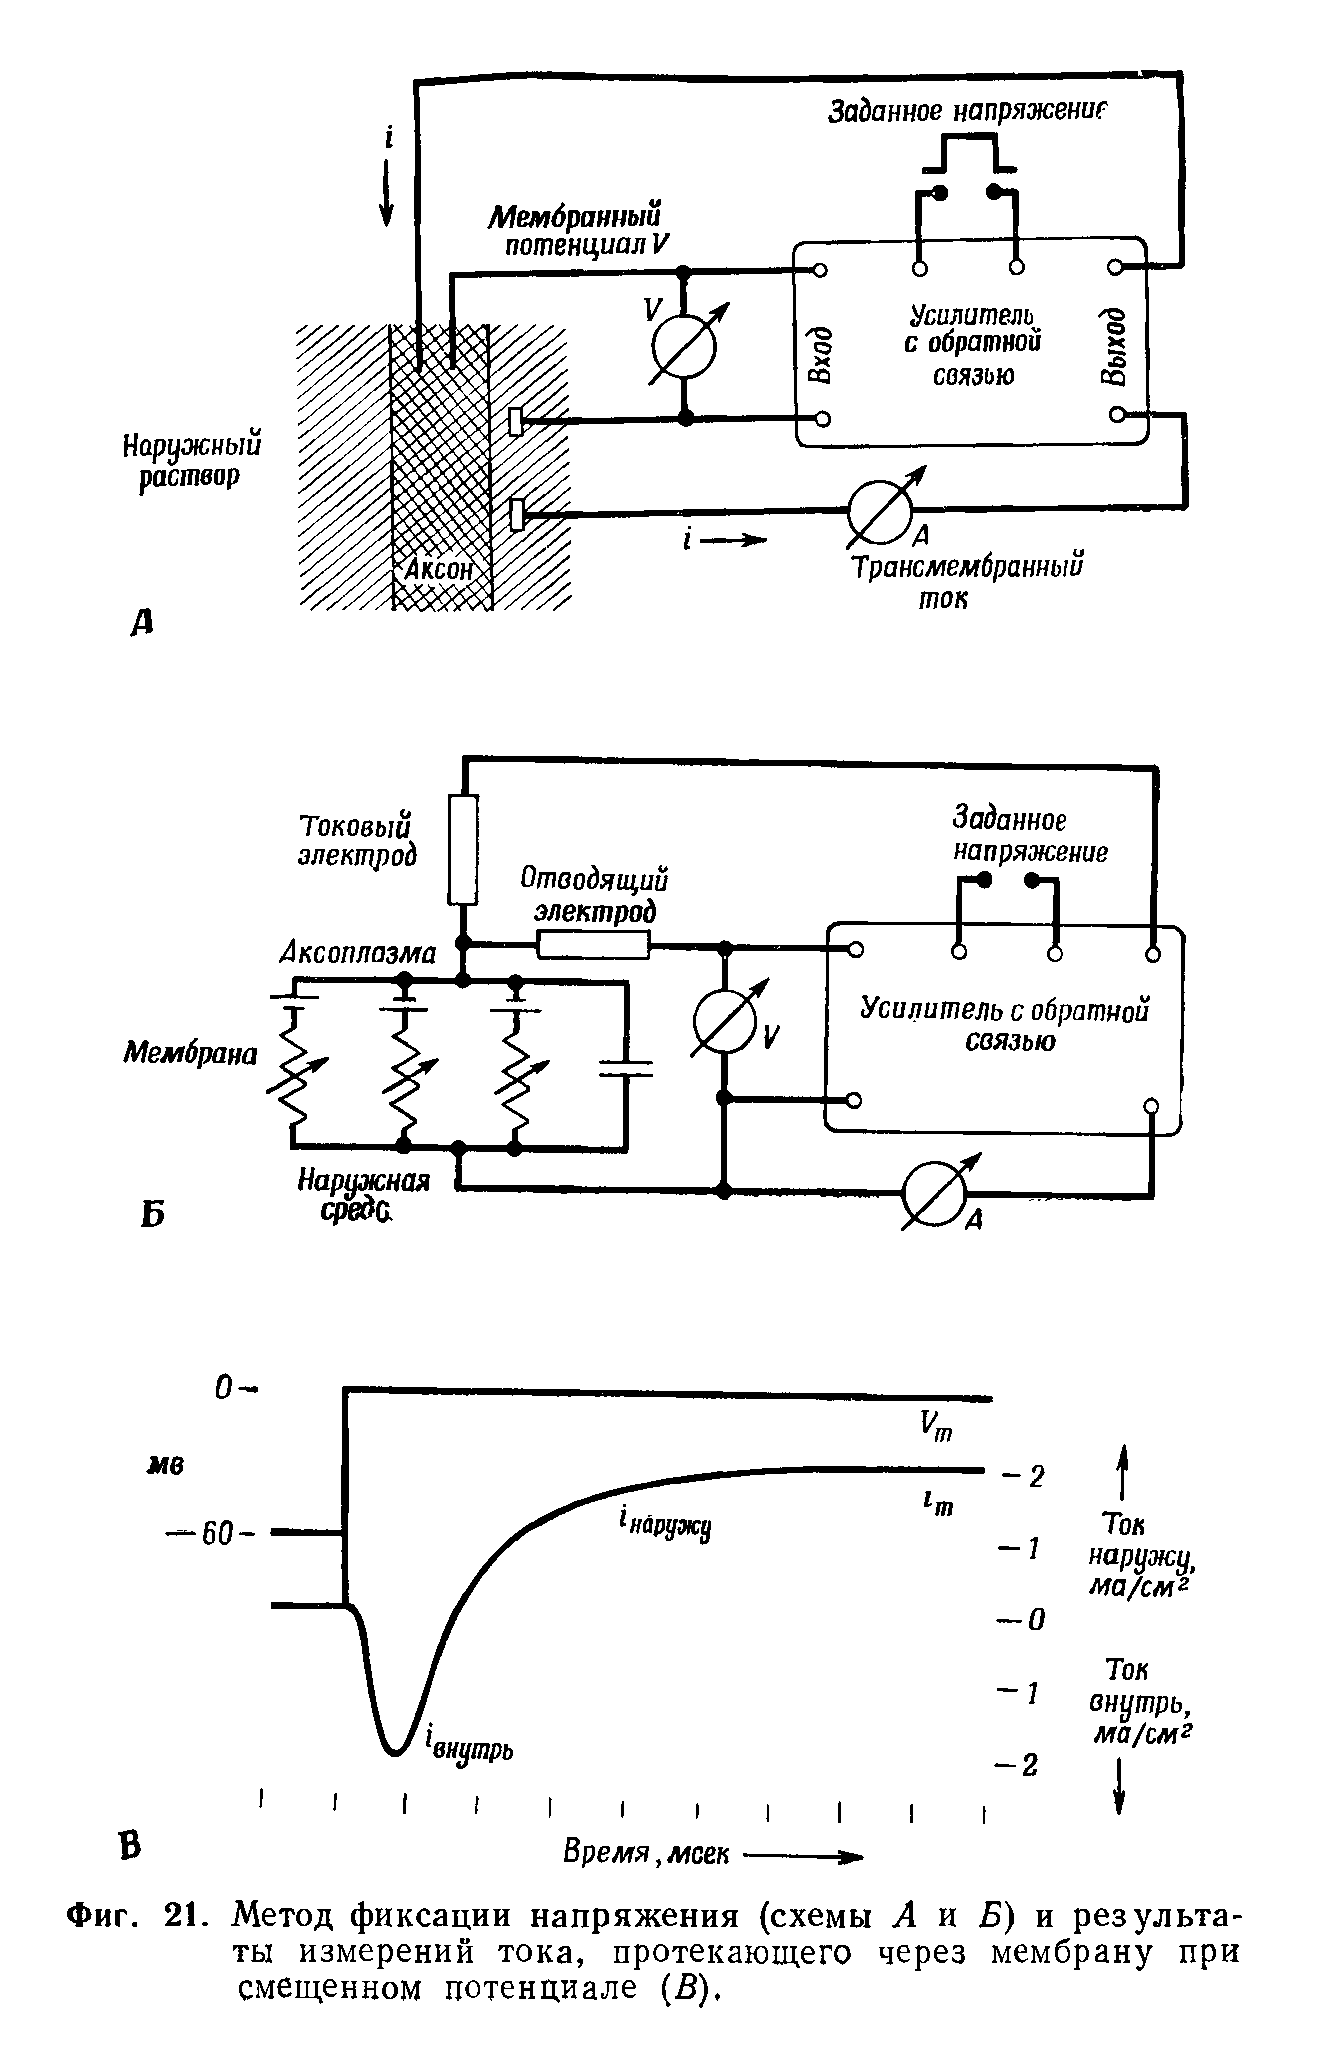 Фиг. 21. Метод фиксации напряжения (схемы А и Б) и результаты измерений тока, протекающего через мембрану при смещенном потенциале (В).